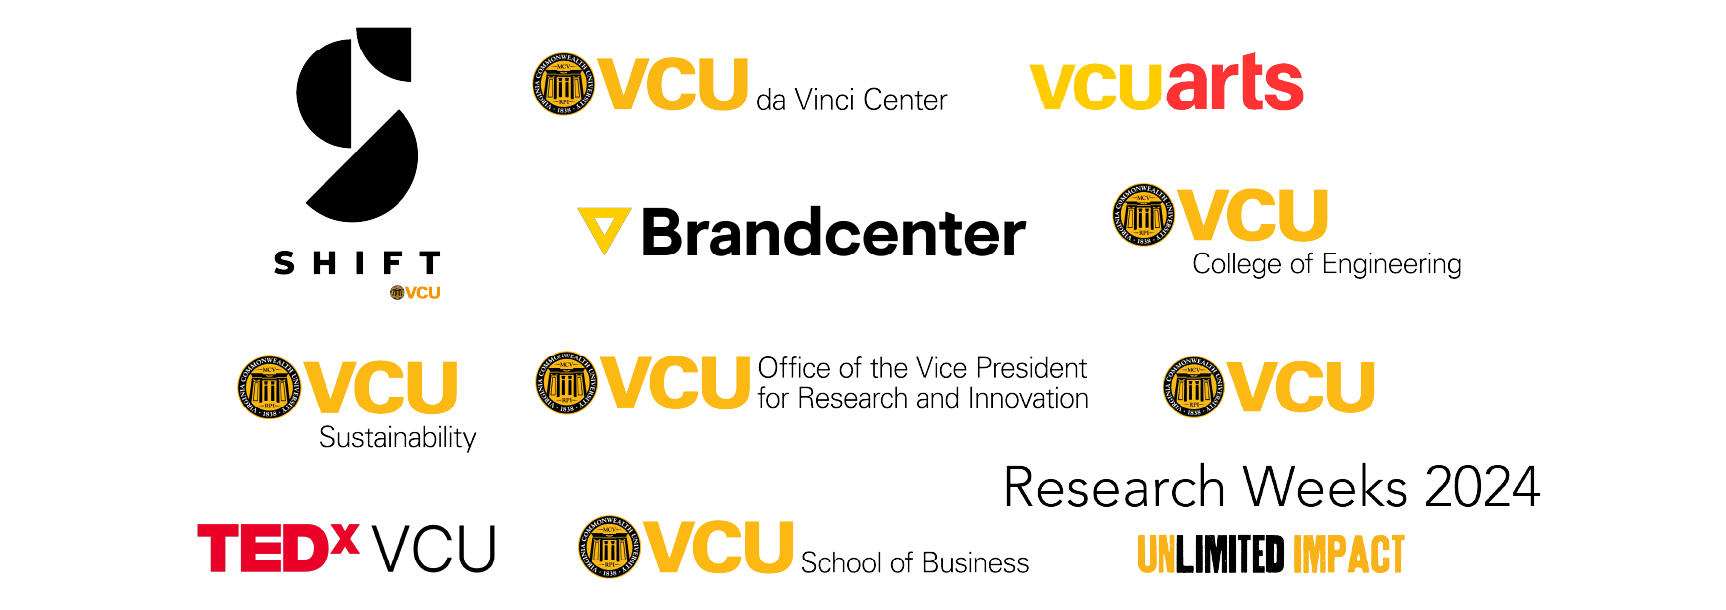 sponsors include VCU School of Business, VCU College of Engineering, VCU da Vinci Center for Innovation, Shift Retail Lab, VCU Brandcenter, VCUarts, VCU Sustainability, TEDxVCU, VCU Research Weeks, VCU College of Engineering, and VCU Office of the Vice President for Research and Innovation